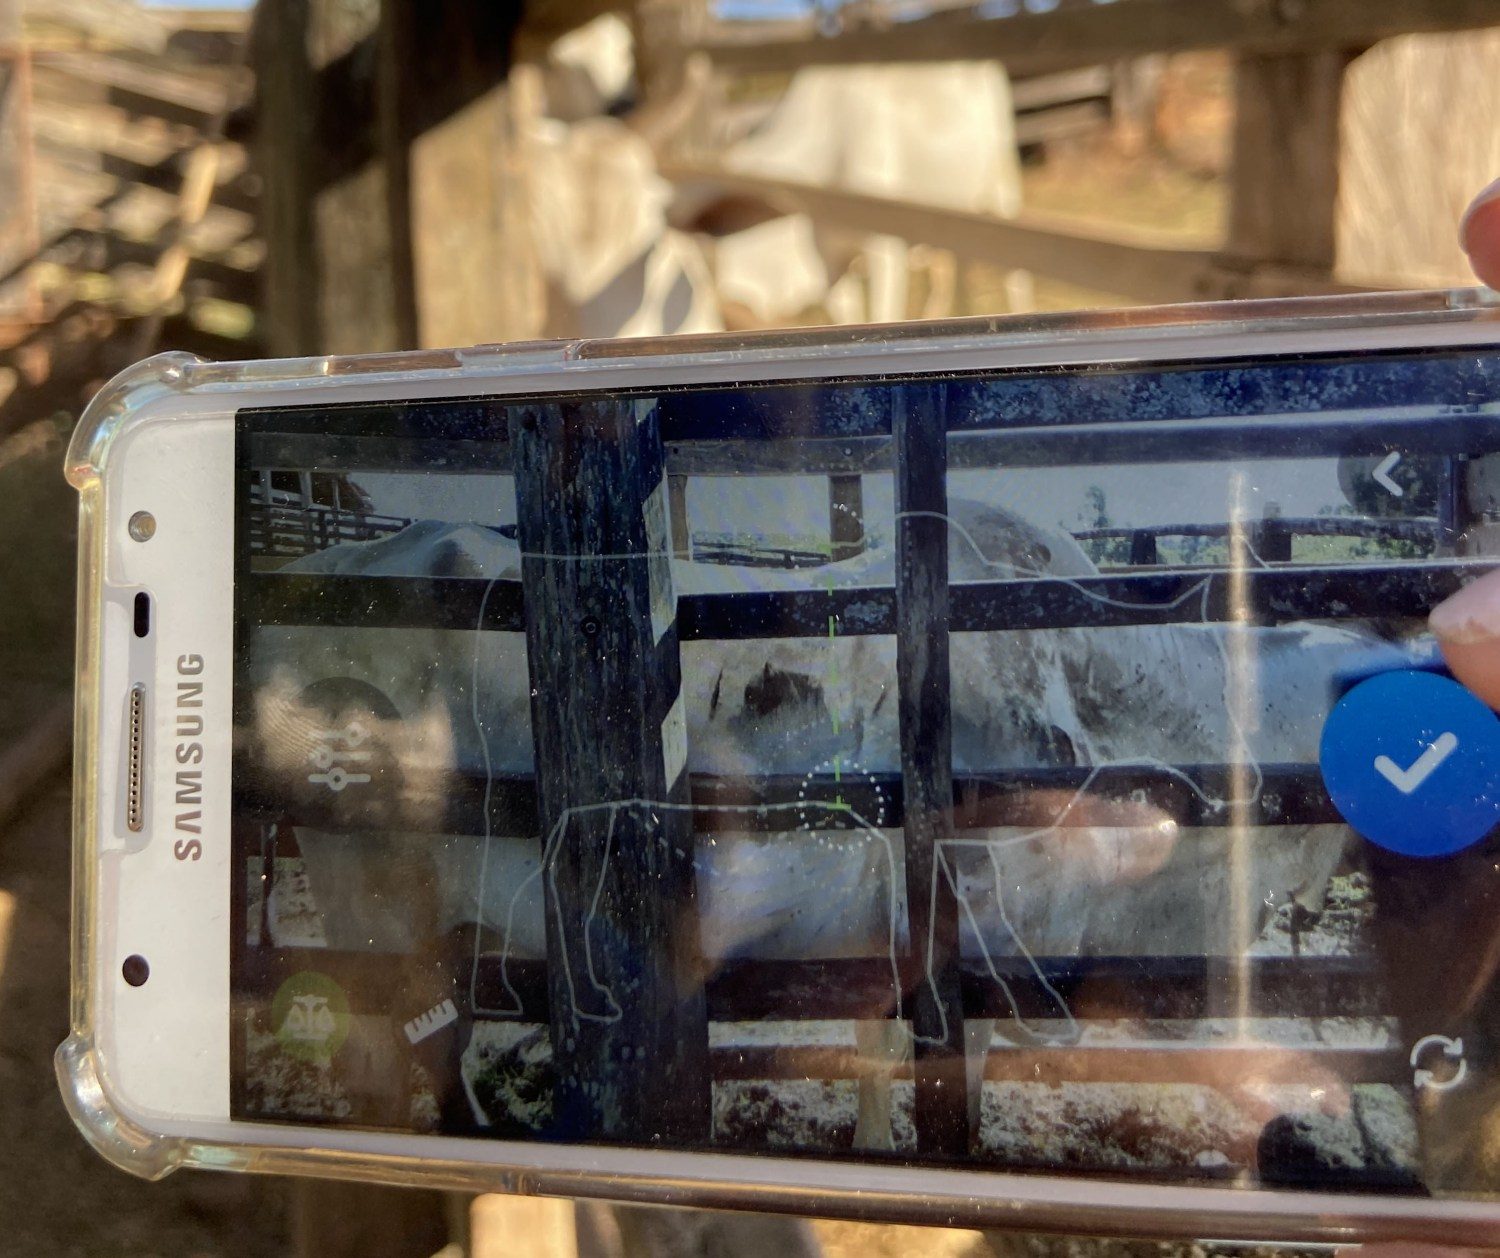 santos lab - App que pesa gado através de foto é lançado no Brasil